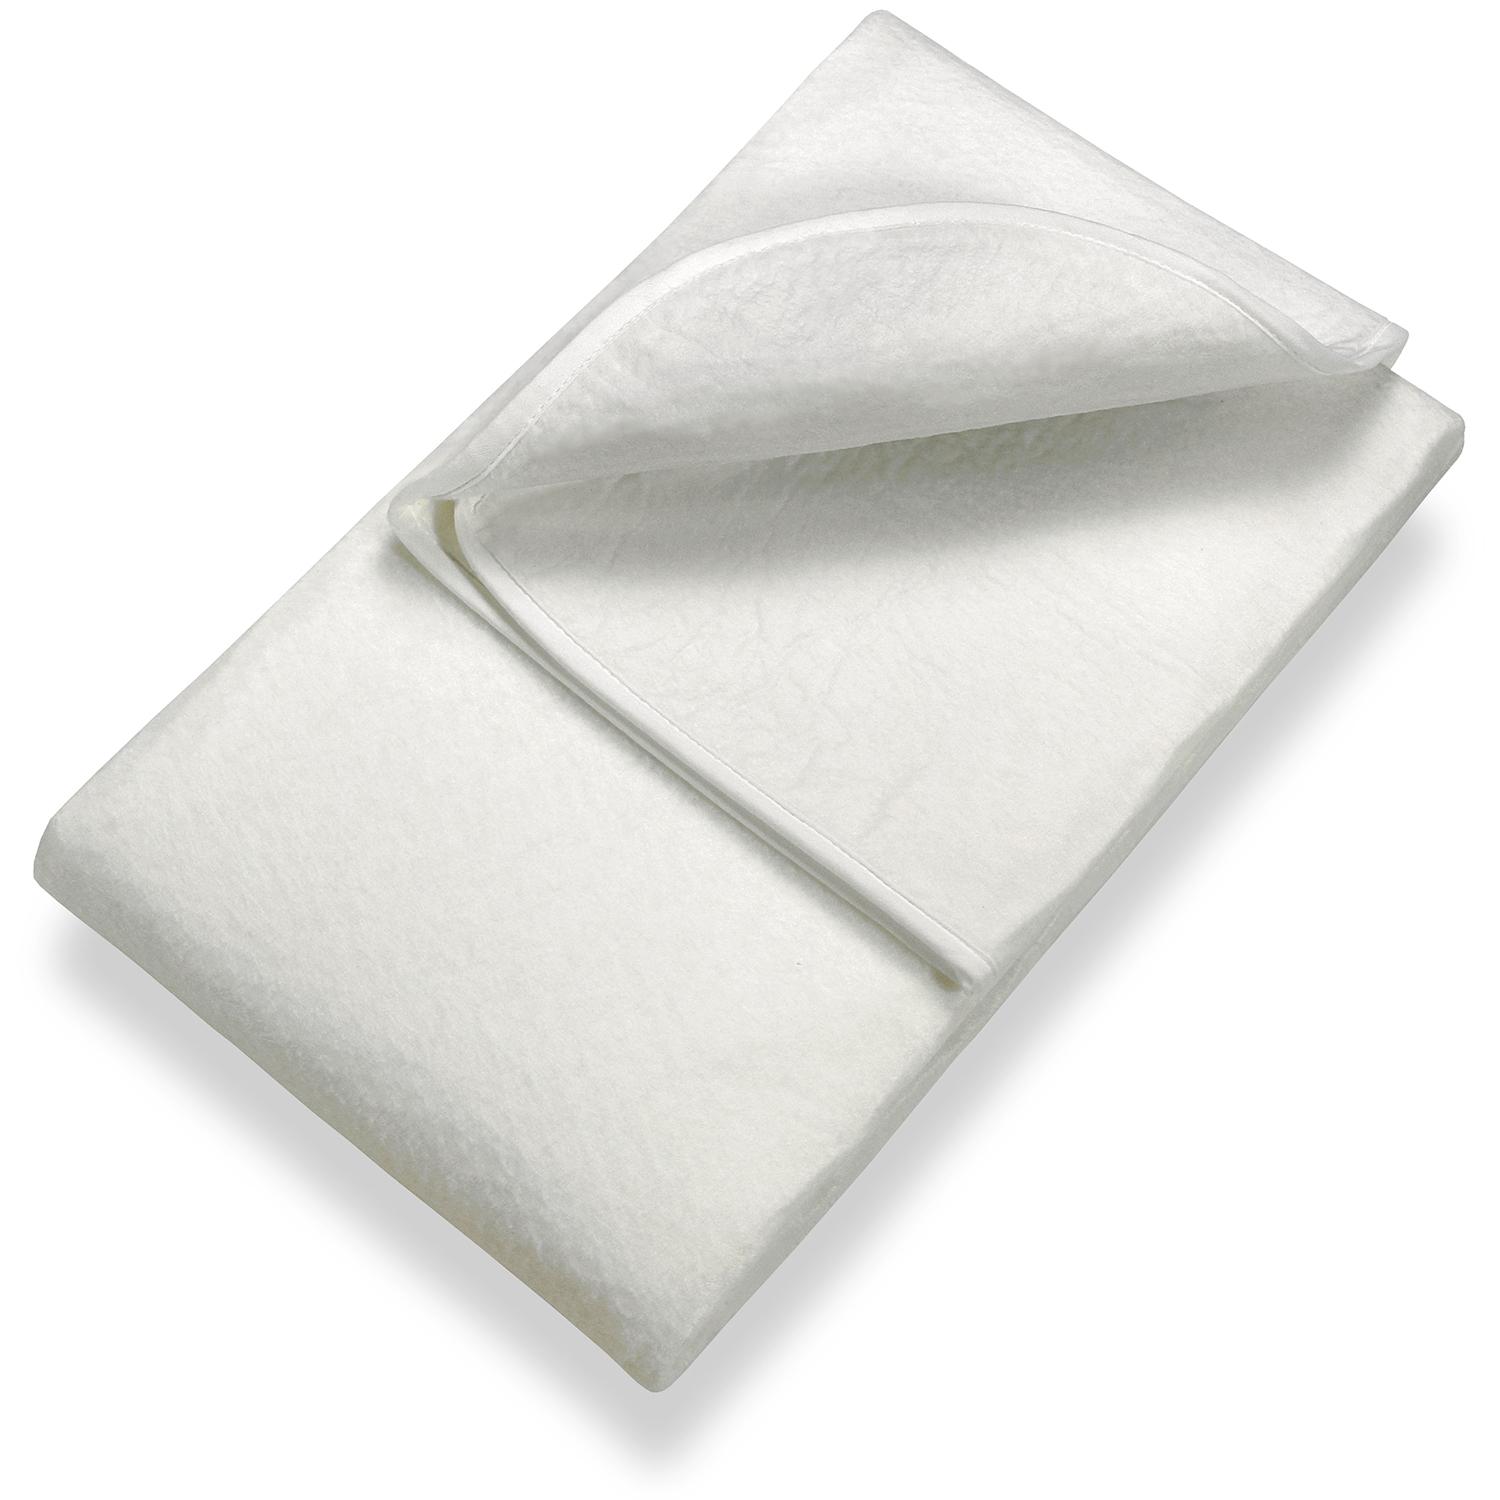 Sleezzz Basic feltro agugliato sotto materasso 120 x 200 cm, protezione per materasso da posizionare sulla rete a doghe, bianco